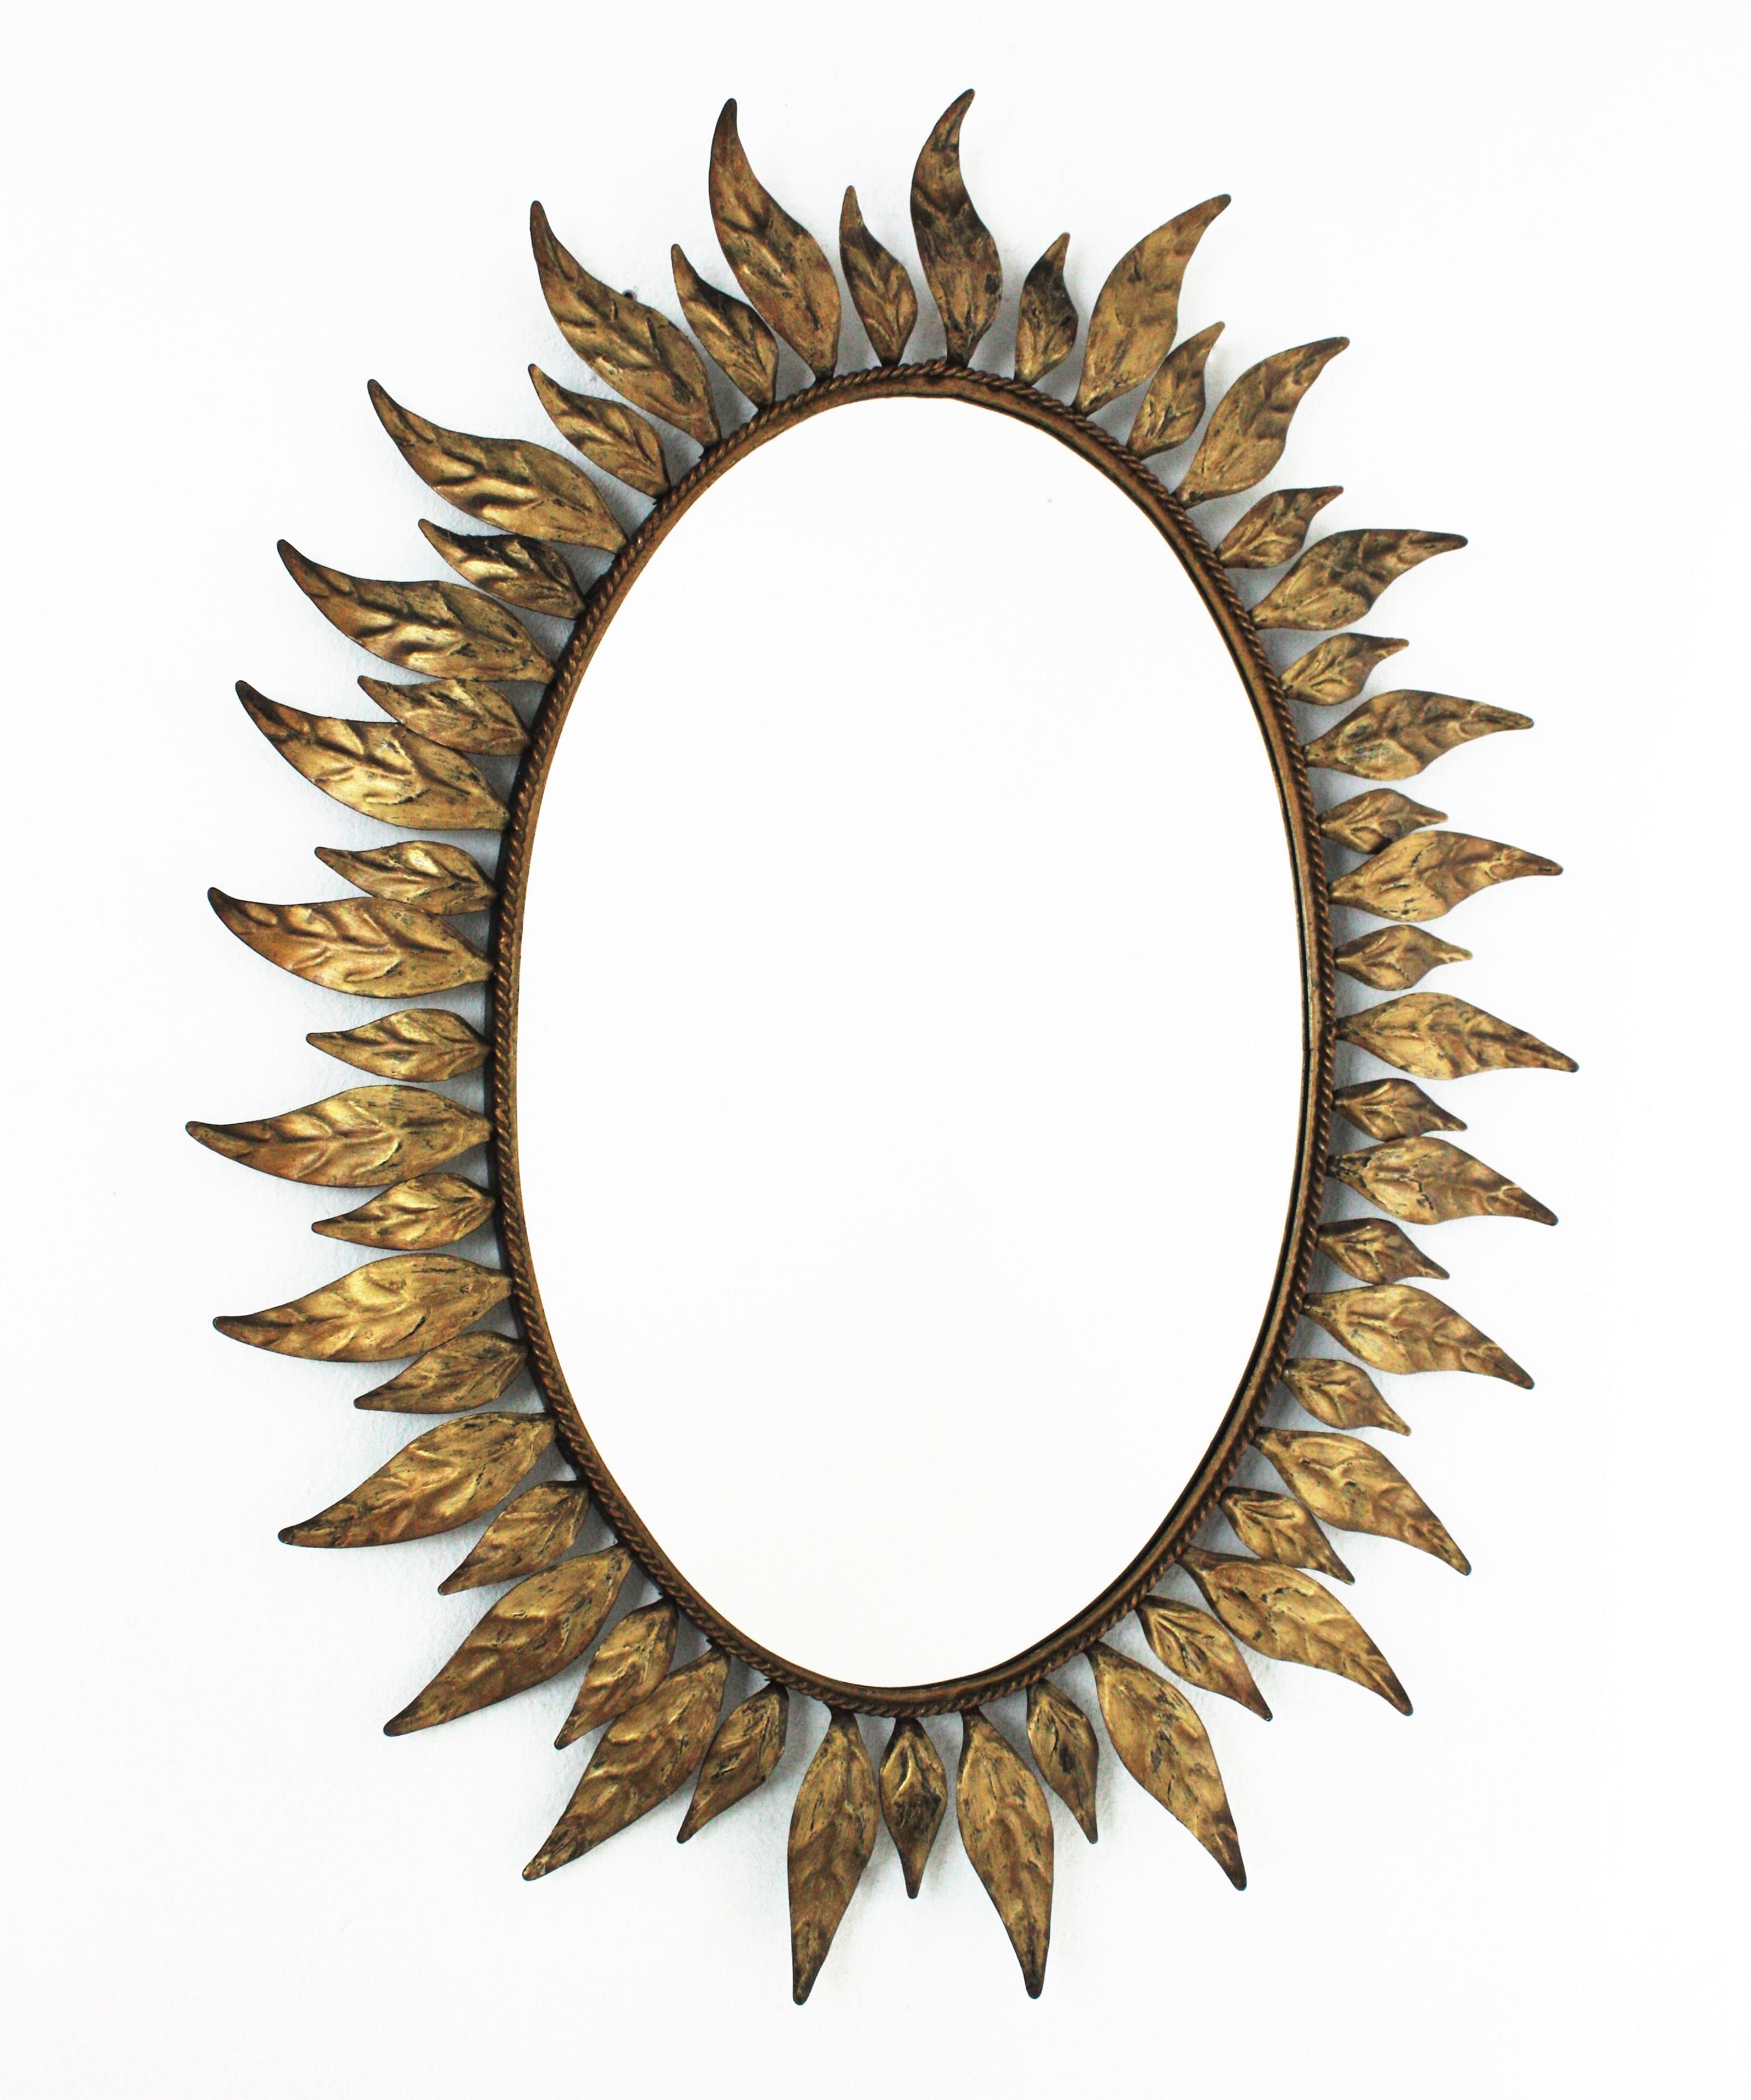 Miroir soleil en métal doré encadré de feuilles en bronze, couleur parcellaire. Espagne, années 1950-1960.
Miroir ovale très décoratif en forme de soleil, encadré d'élégantes feuilles incurvées, disponible en deux tailles.
Ce miroir est en